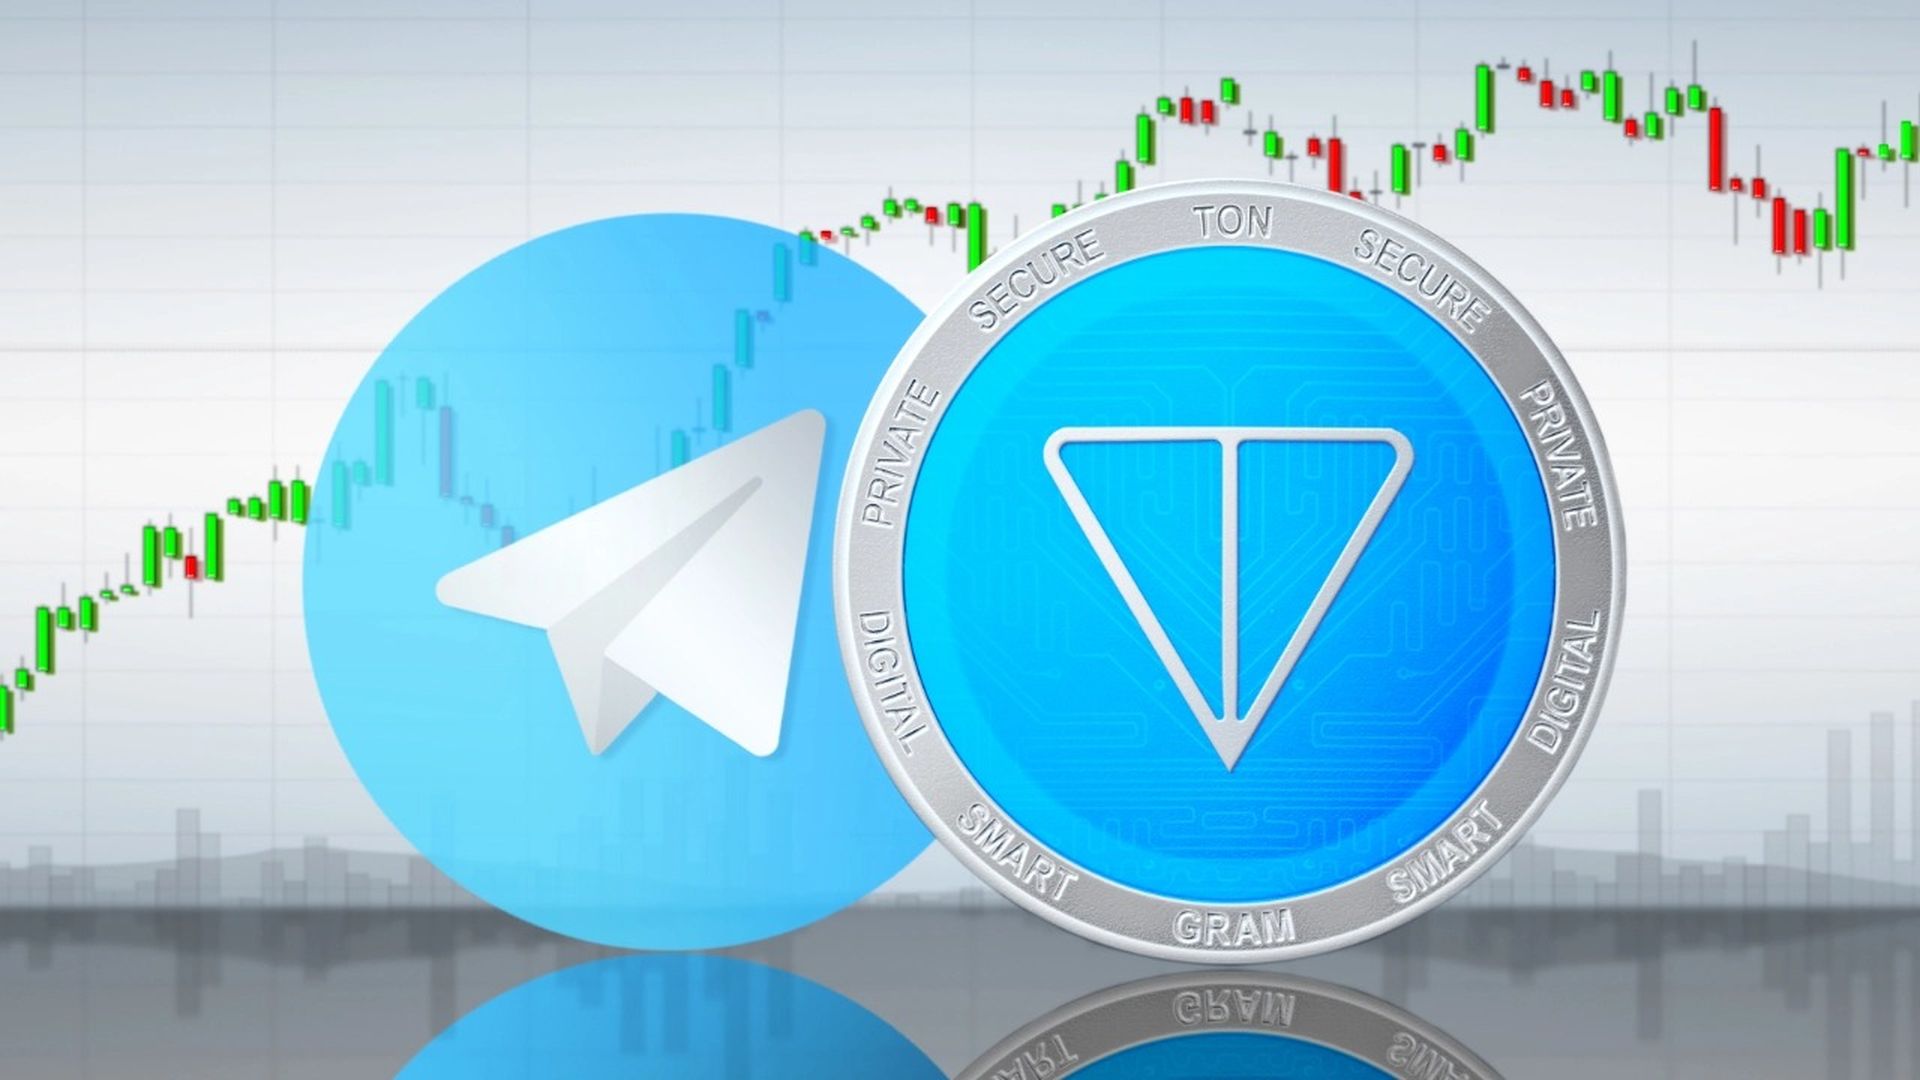 Пользователи Telegram теперь могут торговать TON с помощью платформы обмена сообщениями